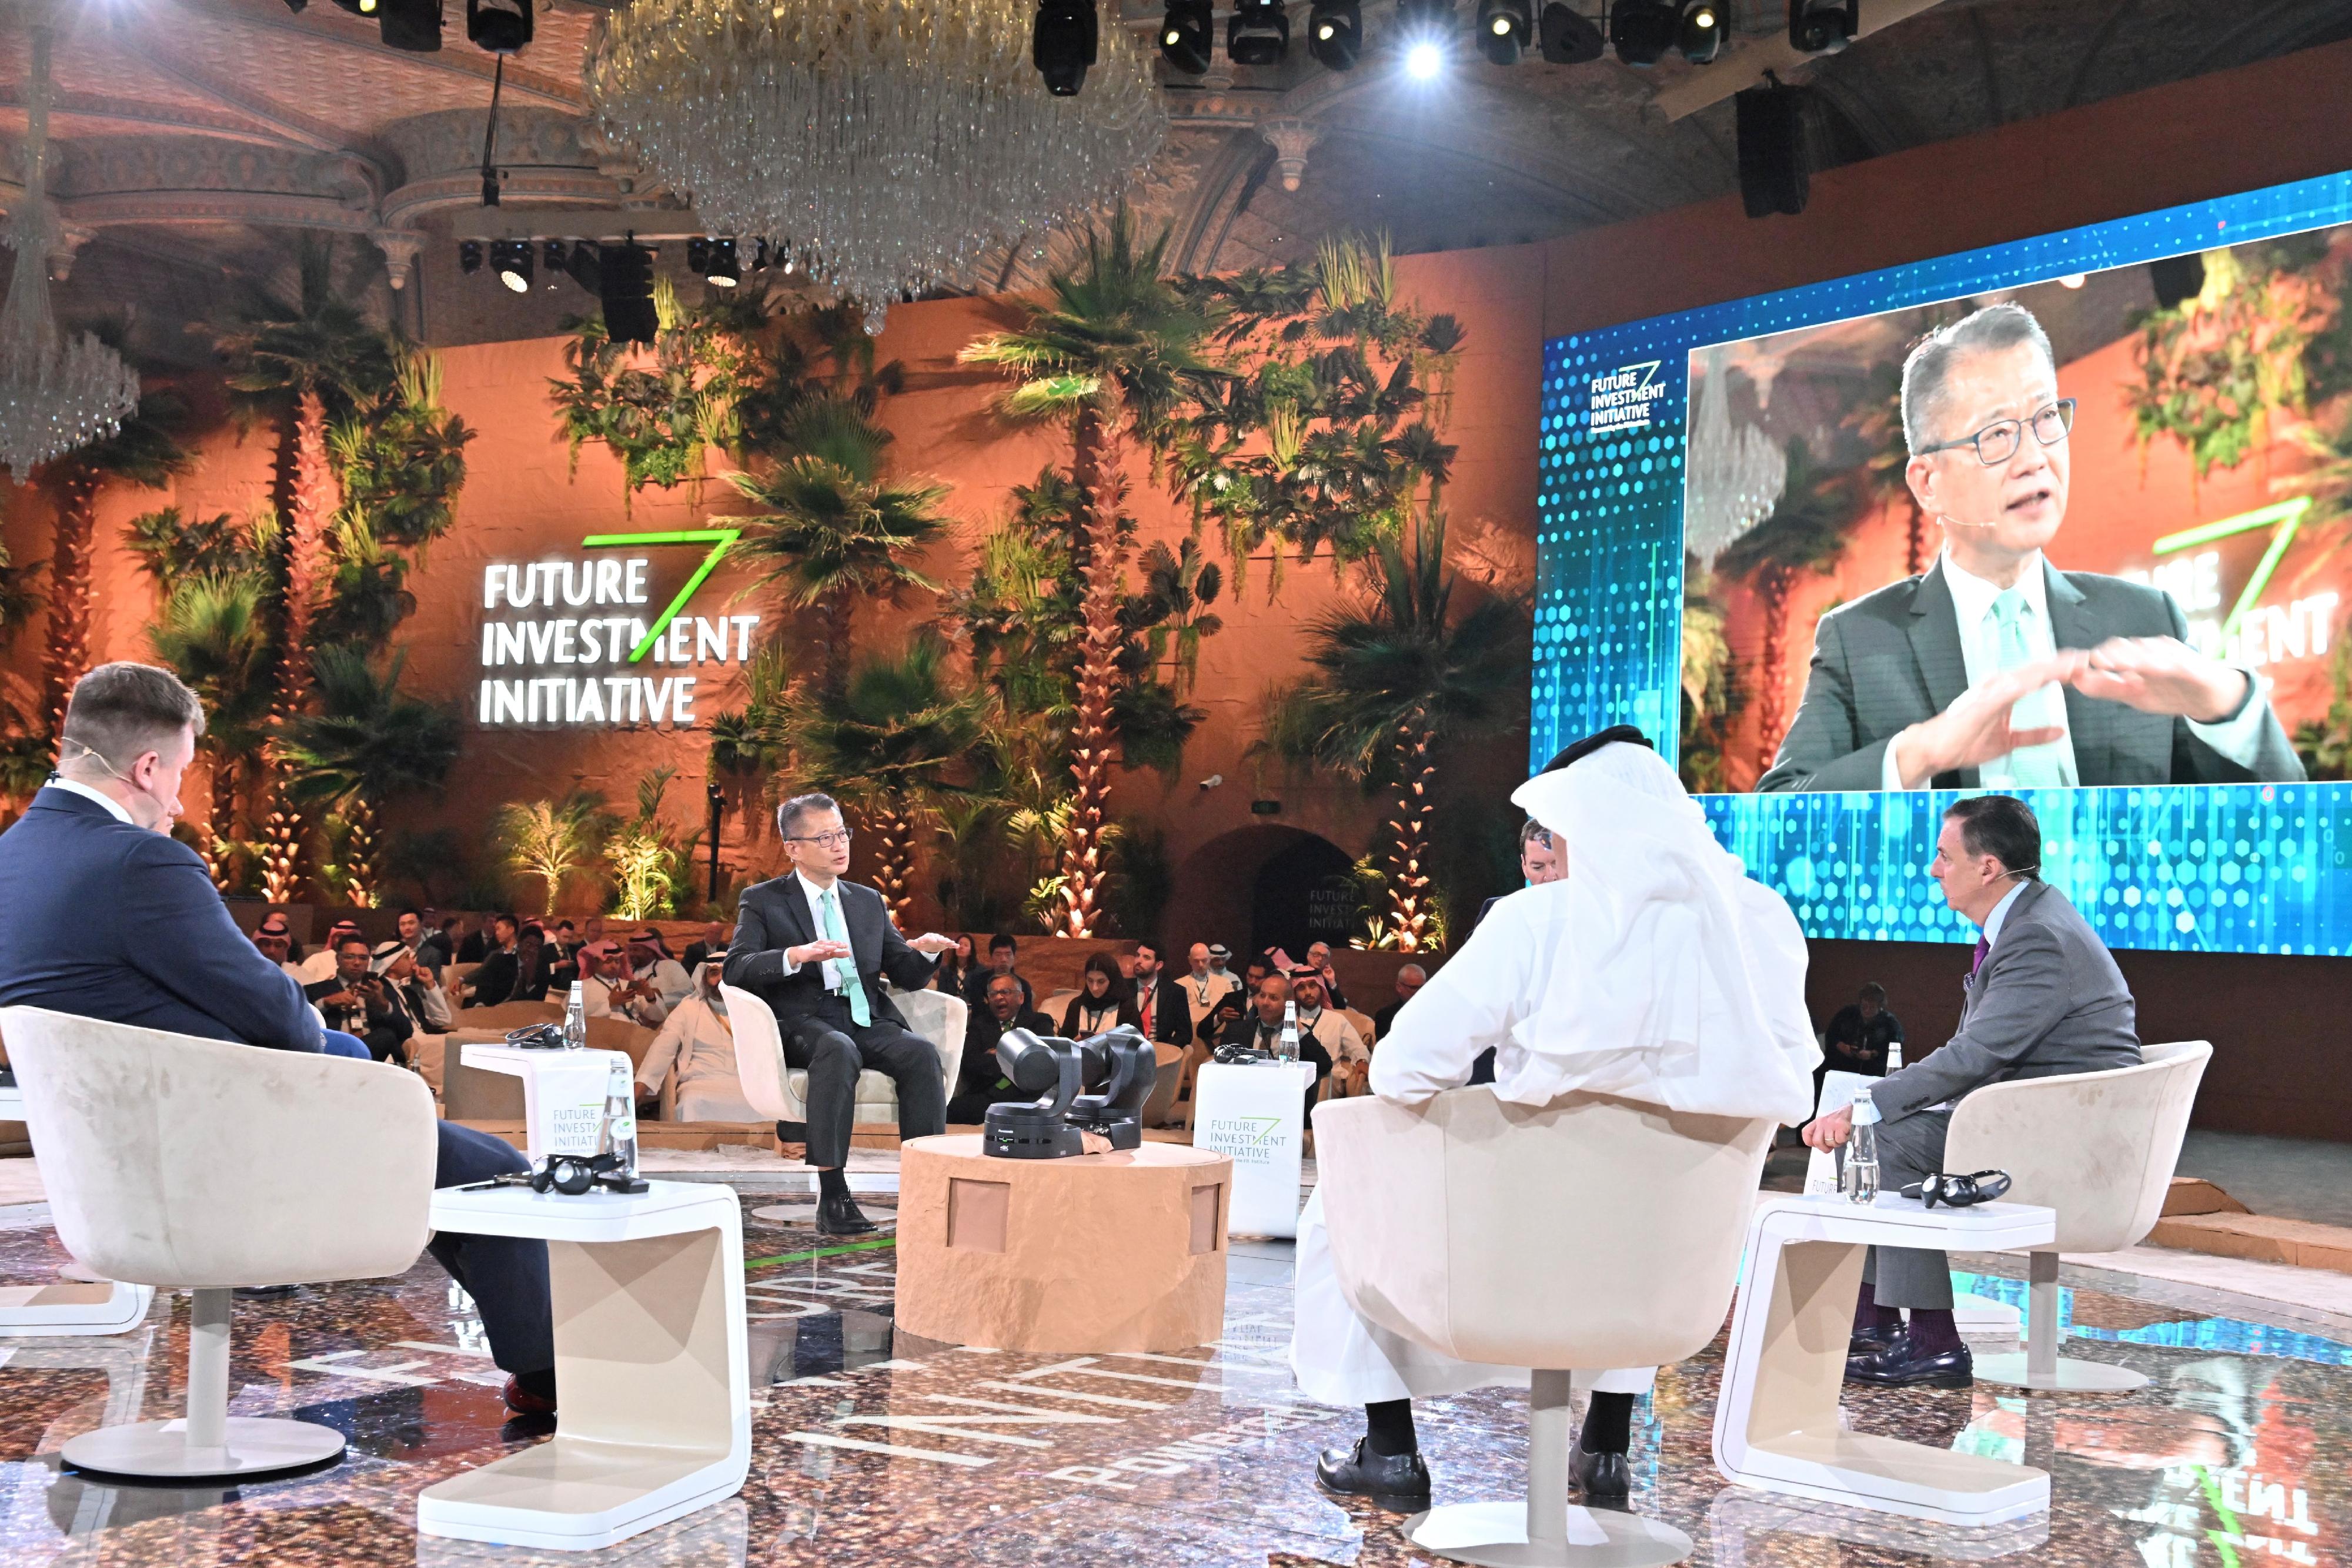 財政司司長陳茂波昨日（十月二十五日，沙特阿拉伯時間）展開沙特阿拉伯的訪問行程。陳茂波（左二）早上出席在利雅德舉行的第六屆「未來投資倡議大會」，並在題為「新環球秩序：政府的觀點」的主題論壇擔任講者。